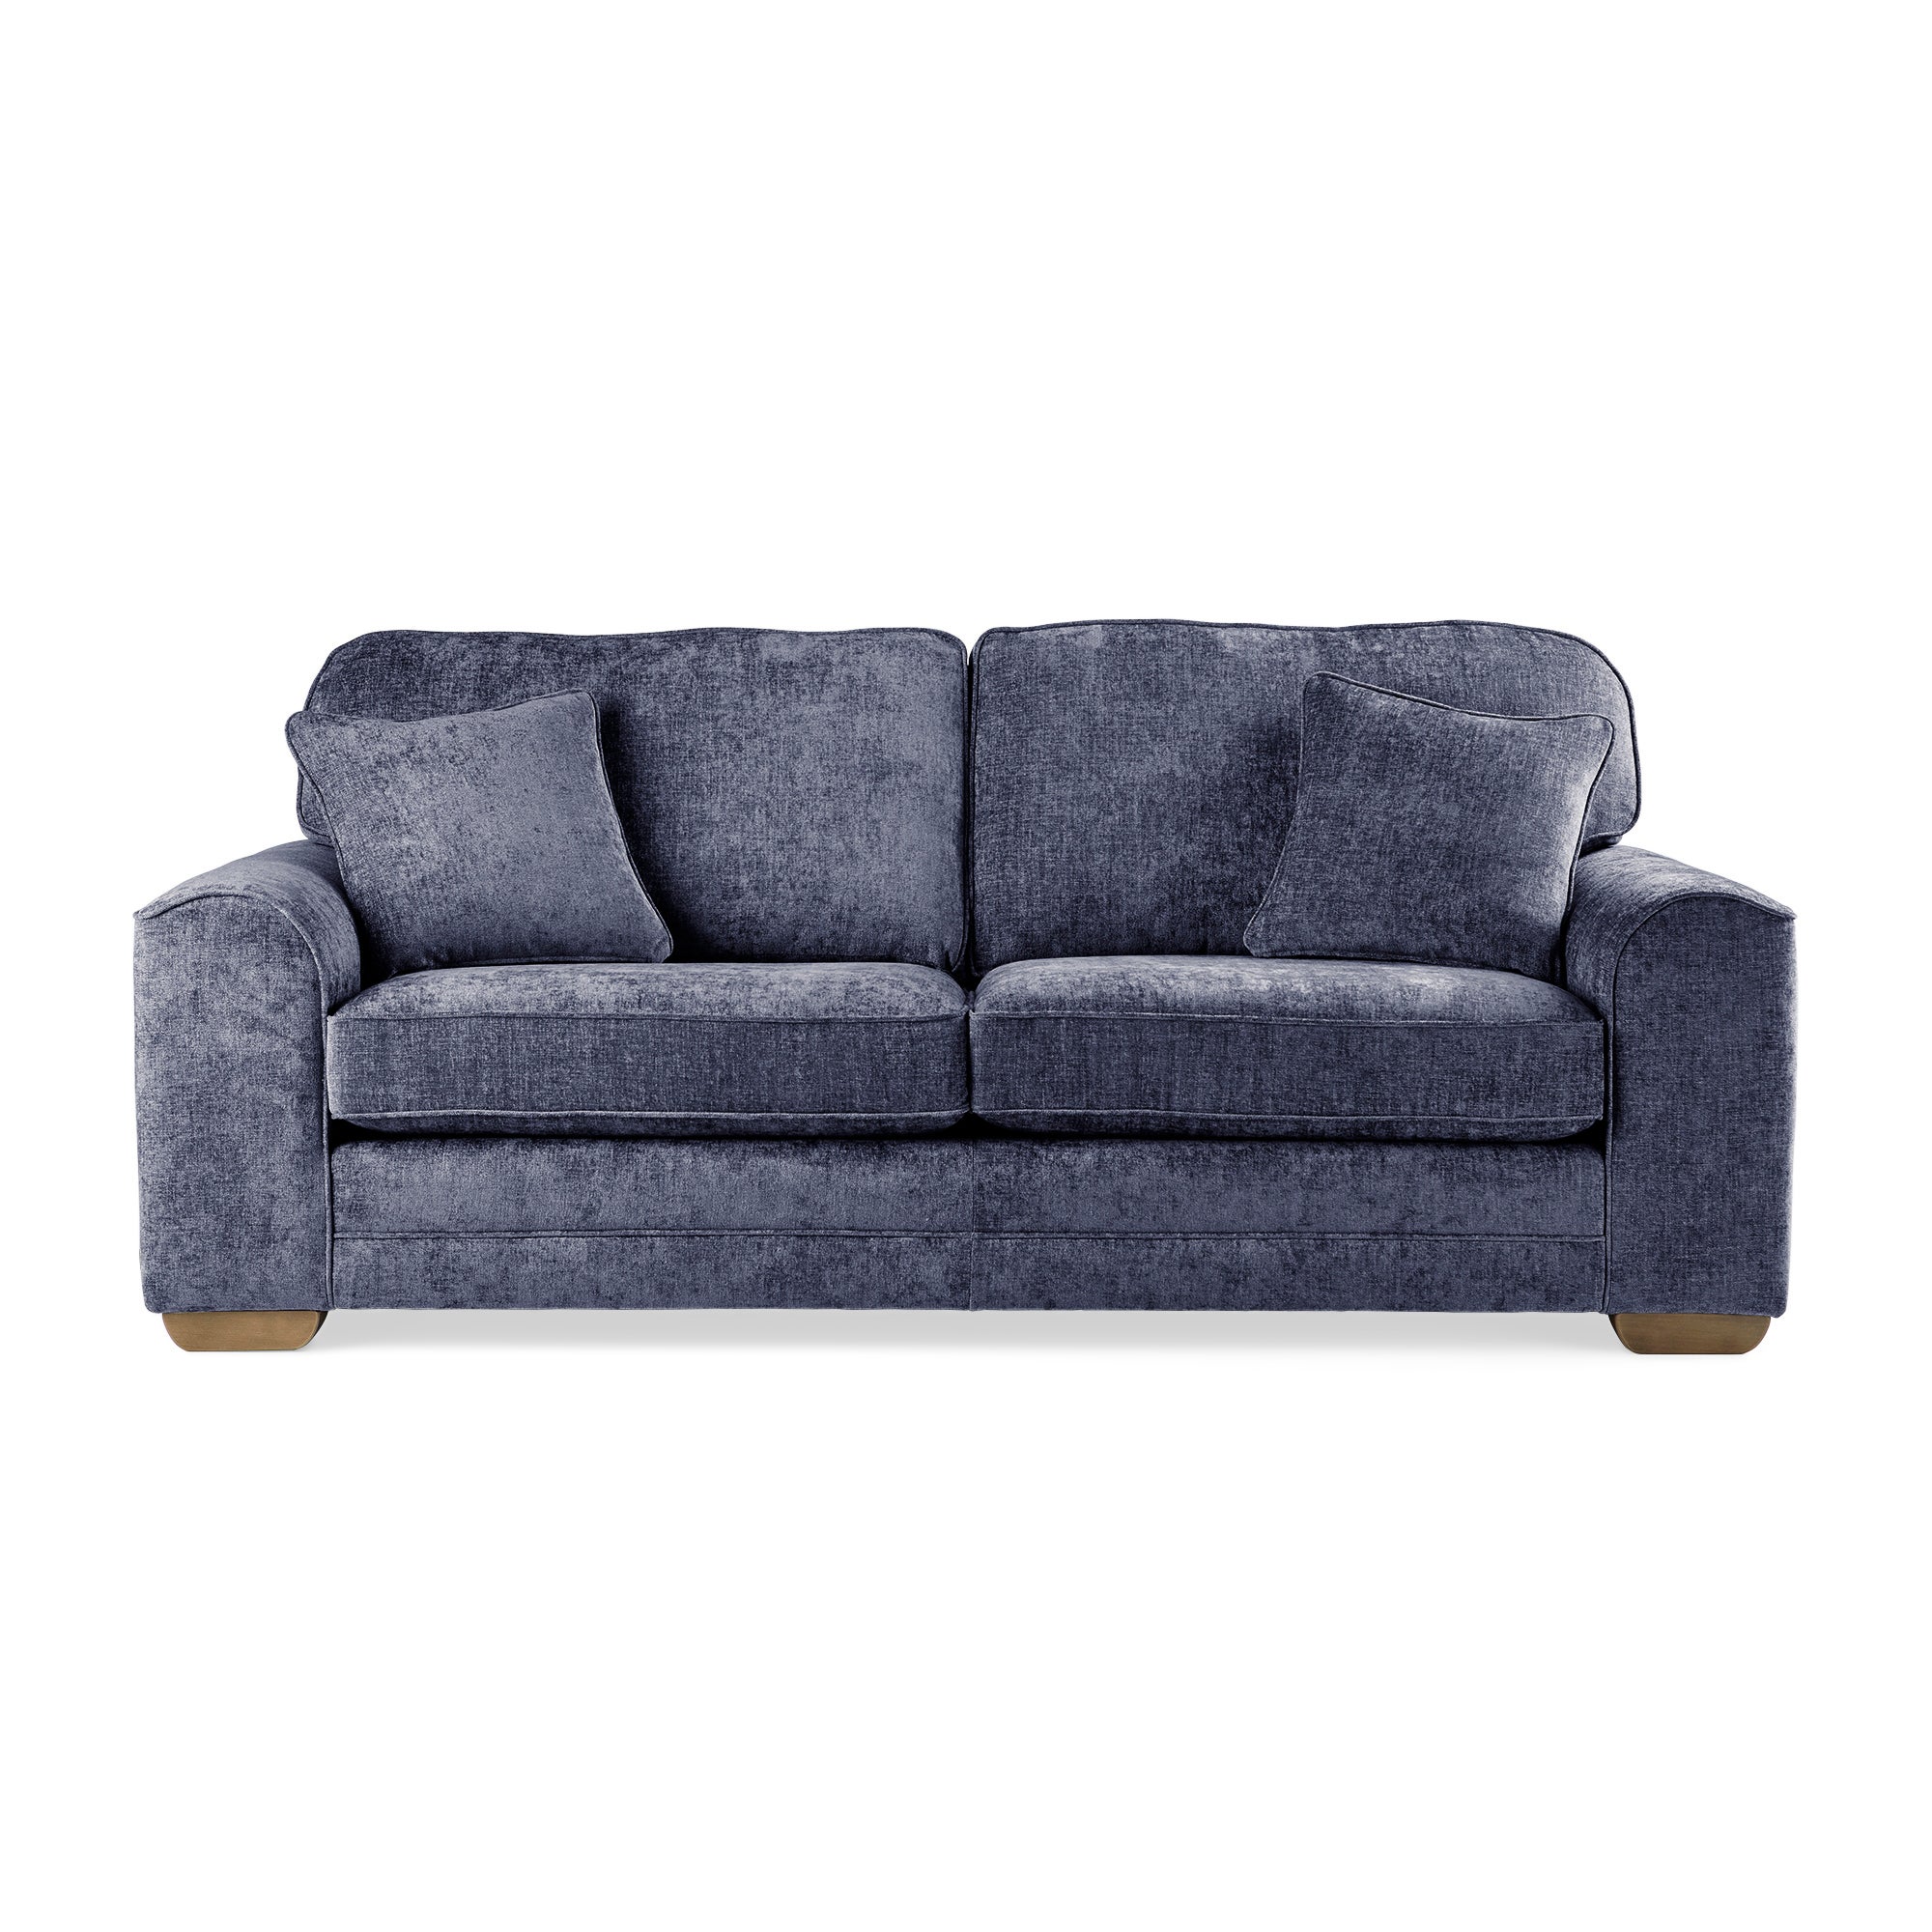 Morello 3 Seater Sofa Navy Blue